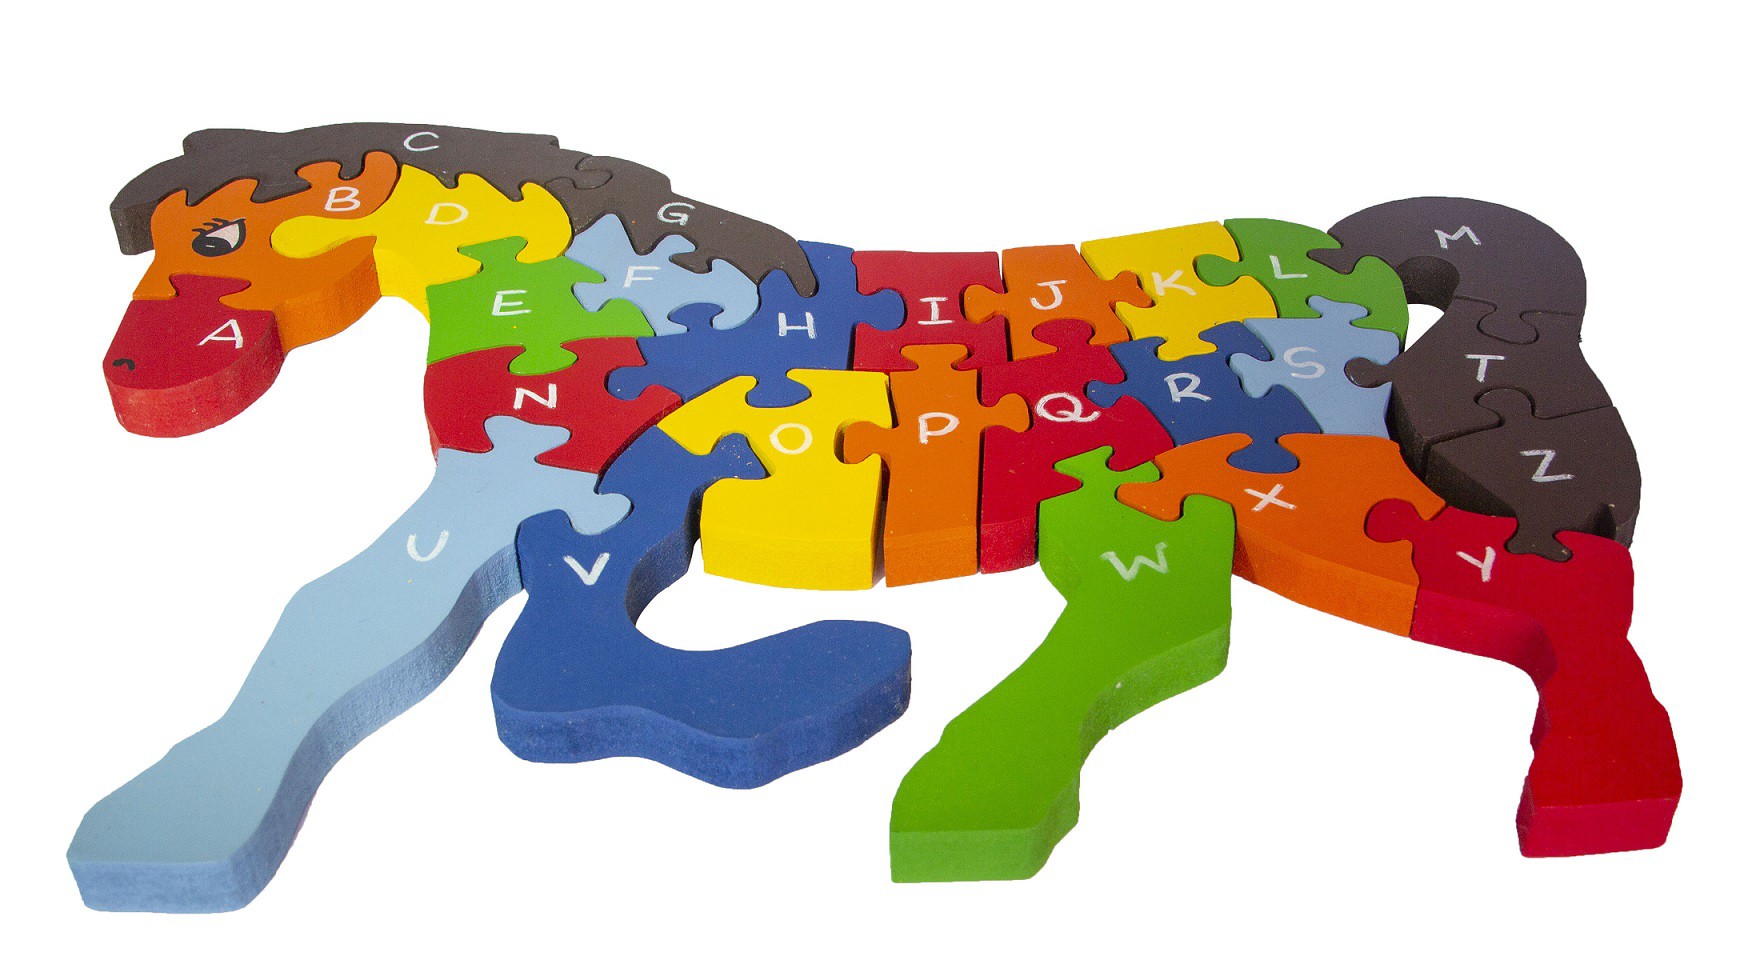 Brinquedo de madeira Quebra-cabeça com Alfabeto e Números Cavalo, da Fábrika dos Sonhos - Cód. FS10